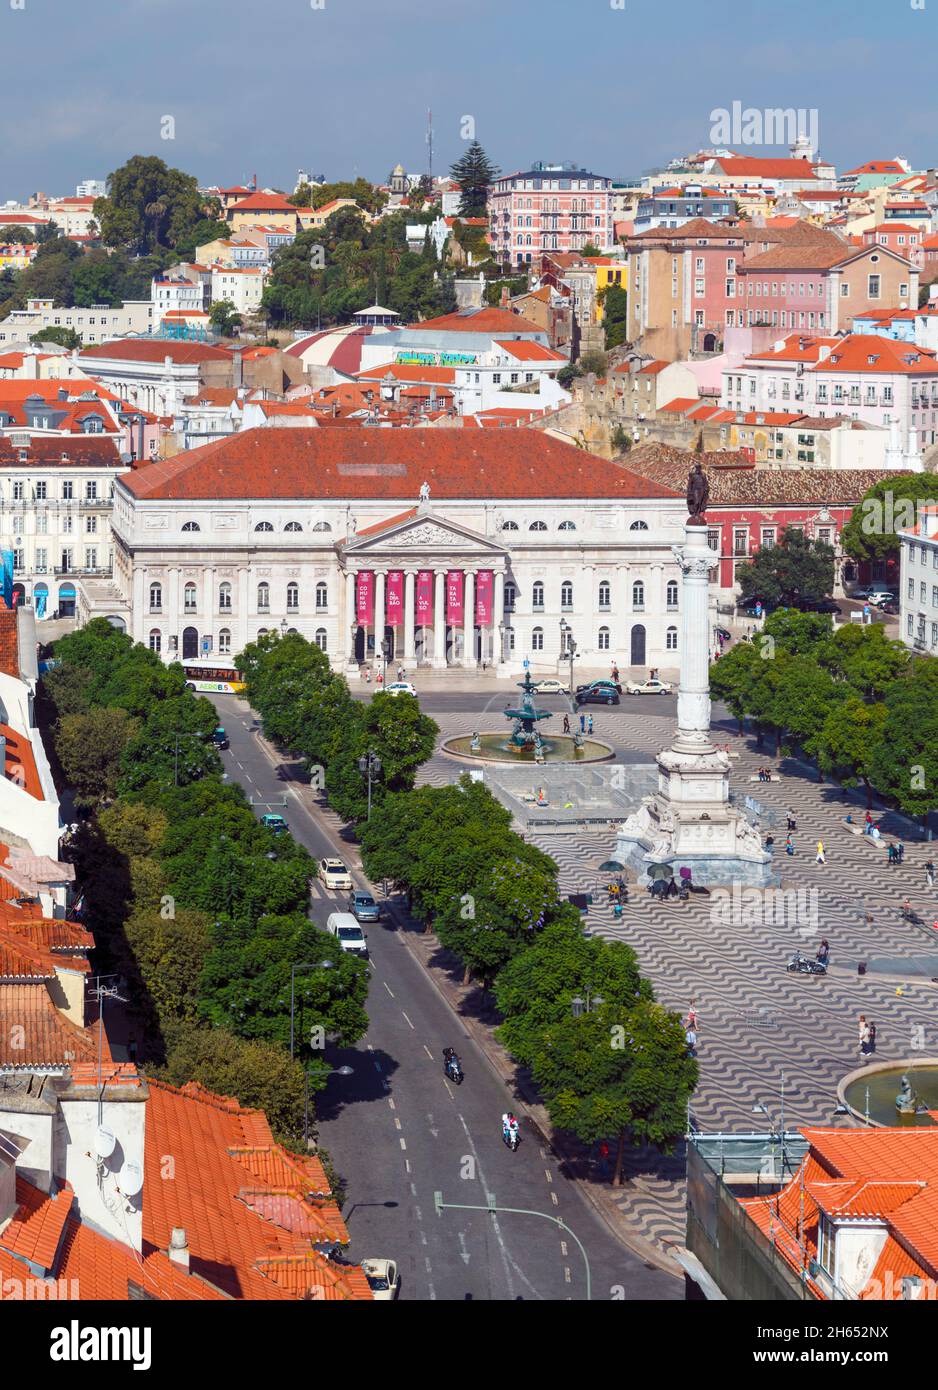 Lisbona, Portogallo. Praca Dom Pedro IV, comunemente noto come Rossio. L'edificio bianco è il Teatro Nazionale, il Teatro Nacional Dona Maria II Il colum Foto Stock